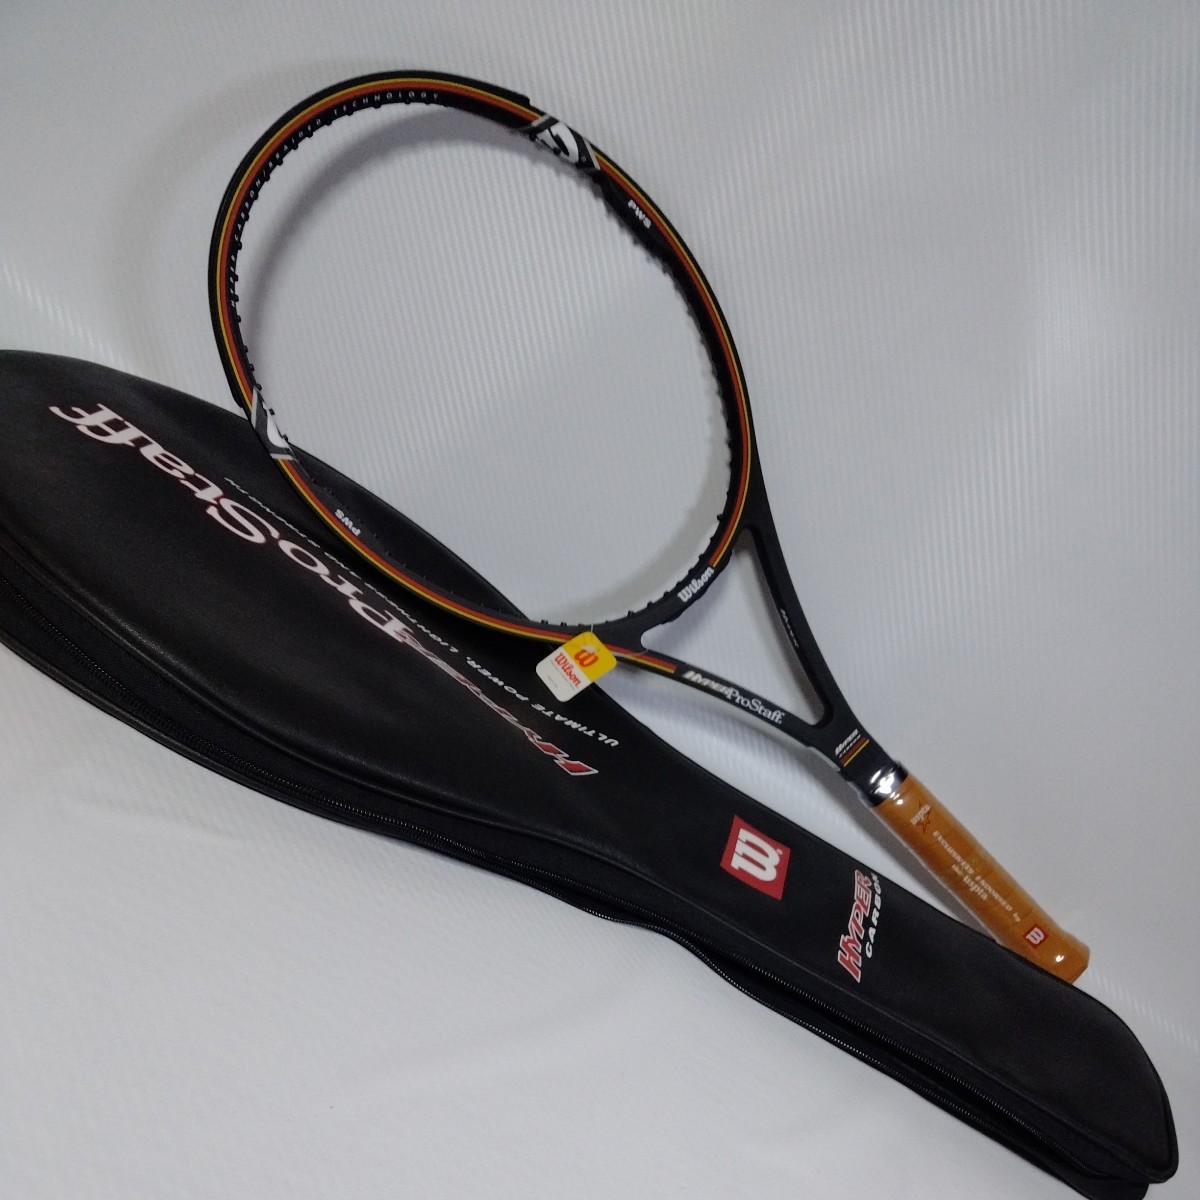 新品限定Wilsonハイパープロスタッフ85 2000リミテッドエディション ウイルソン テニスラケット PROSTAFF